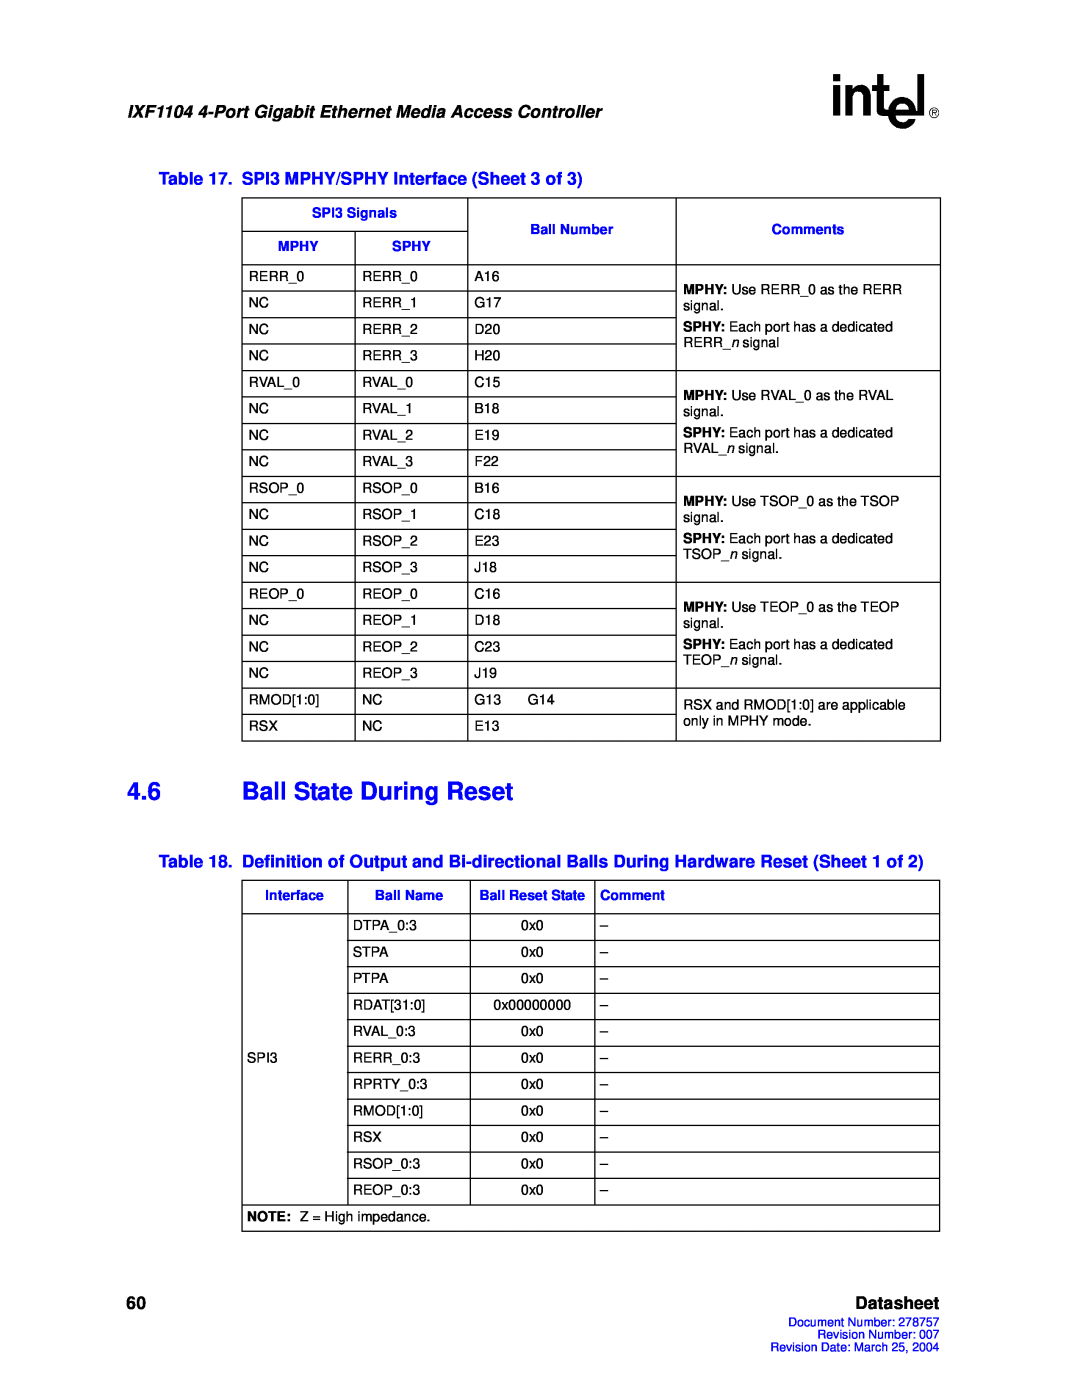 Intel IXF1104 manual 4.6Ball State During Reset, Datasheet 